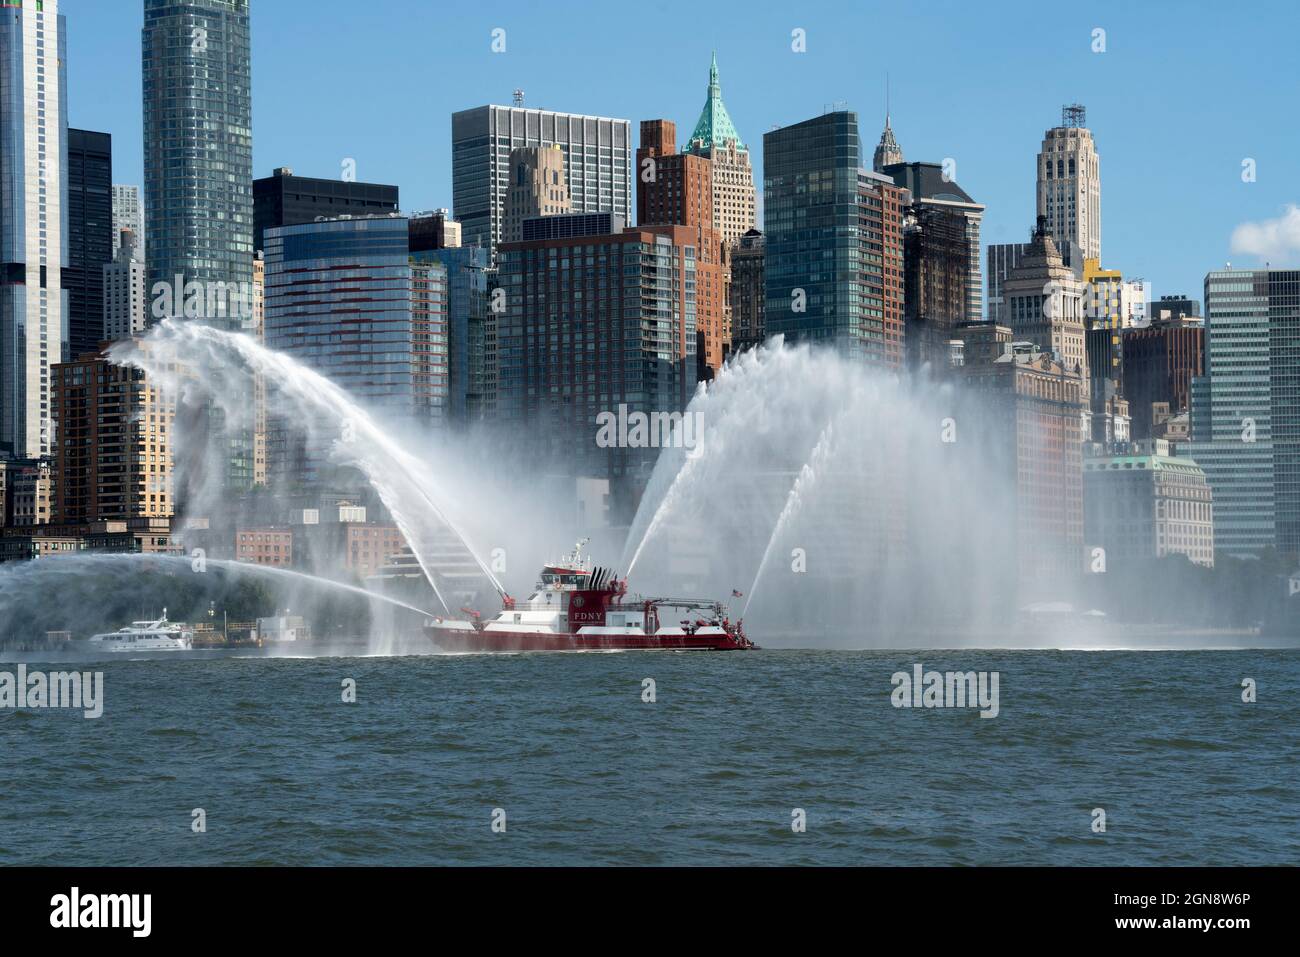 Il 10 settembre 2021, FDNY Fireboat 343 ha condotto una flottiglia di barche attraverso il porto di New York e passato il World Trade Center in onore del boatlift 9/11. Foto Stock